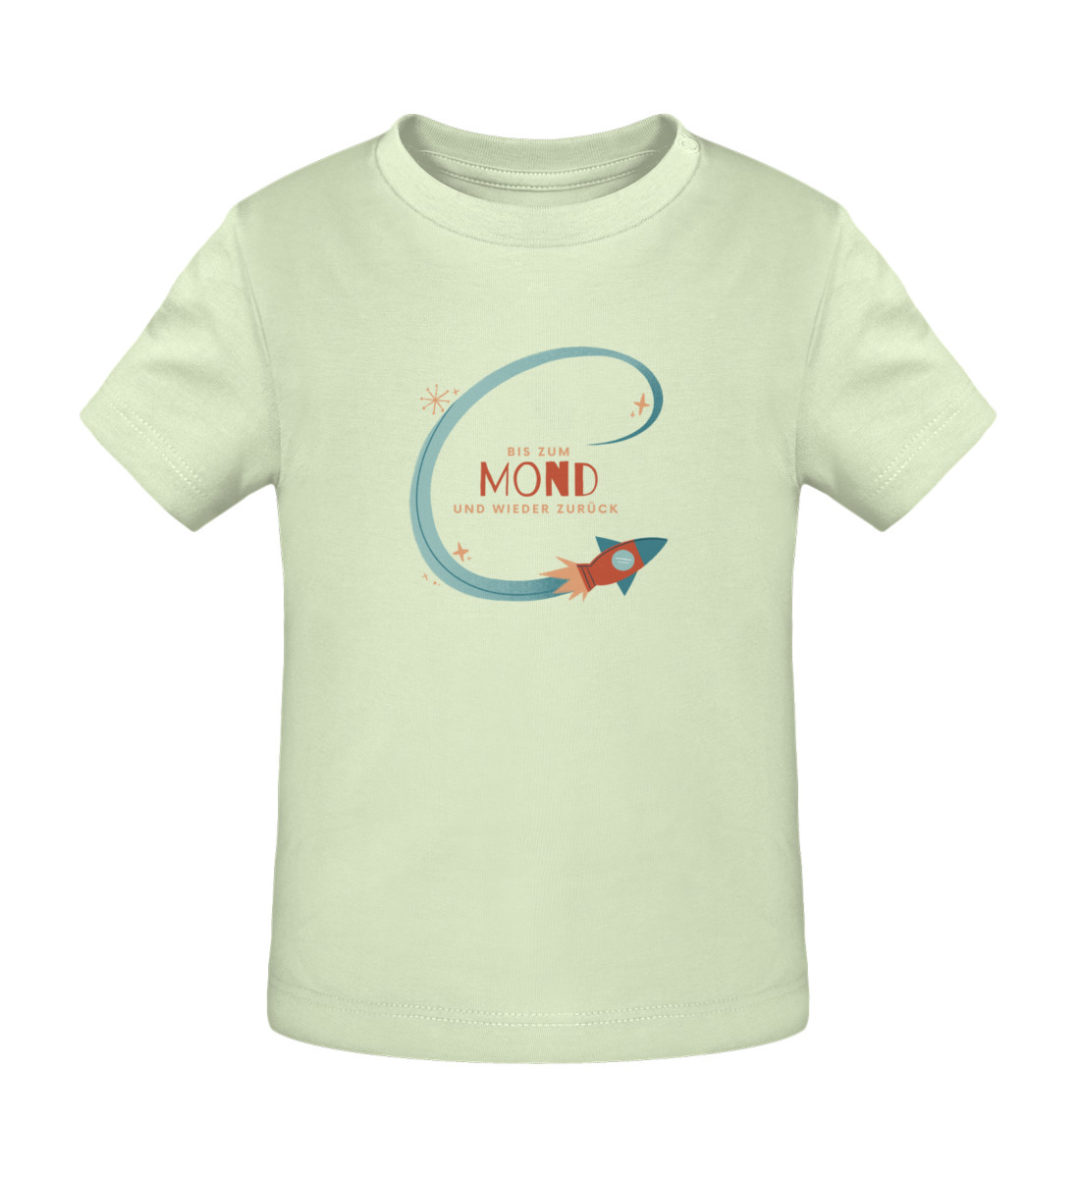 Bis zum Mond und wieder zurück - Baby Creator T-Shirt ST/ST-7105